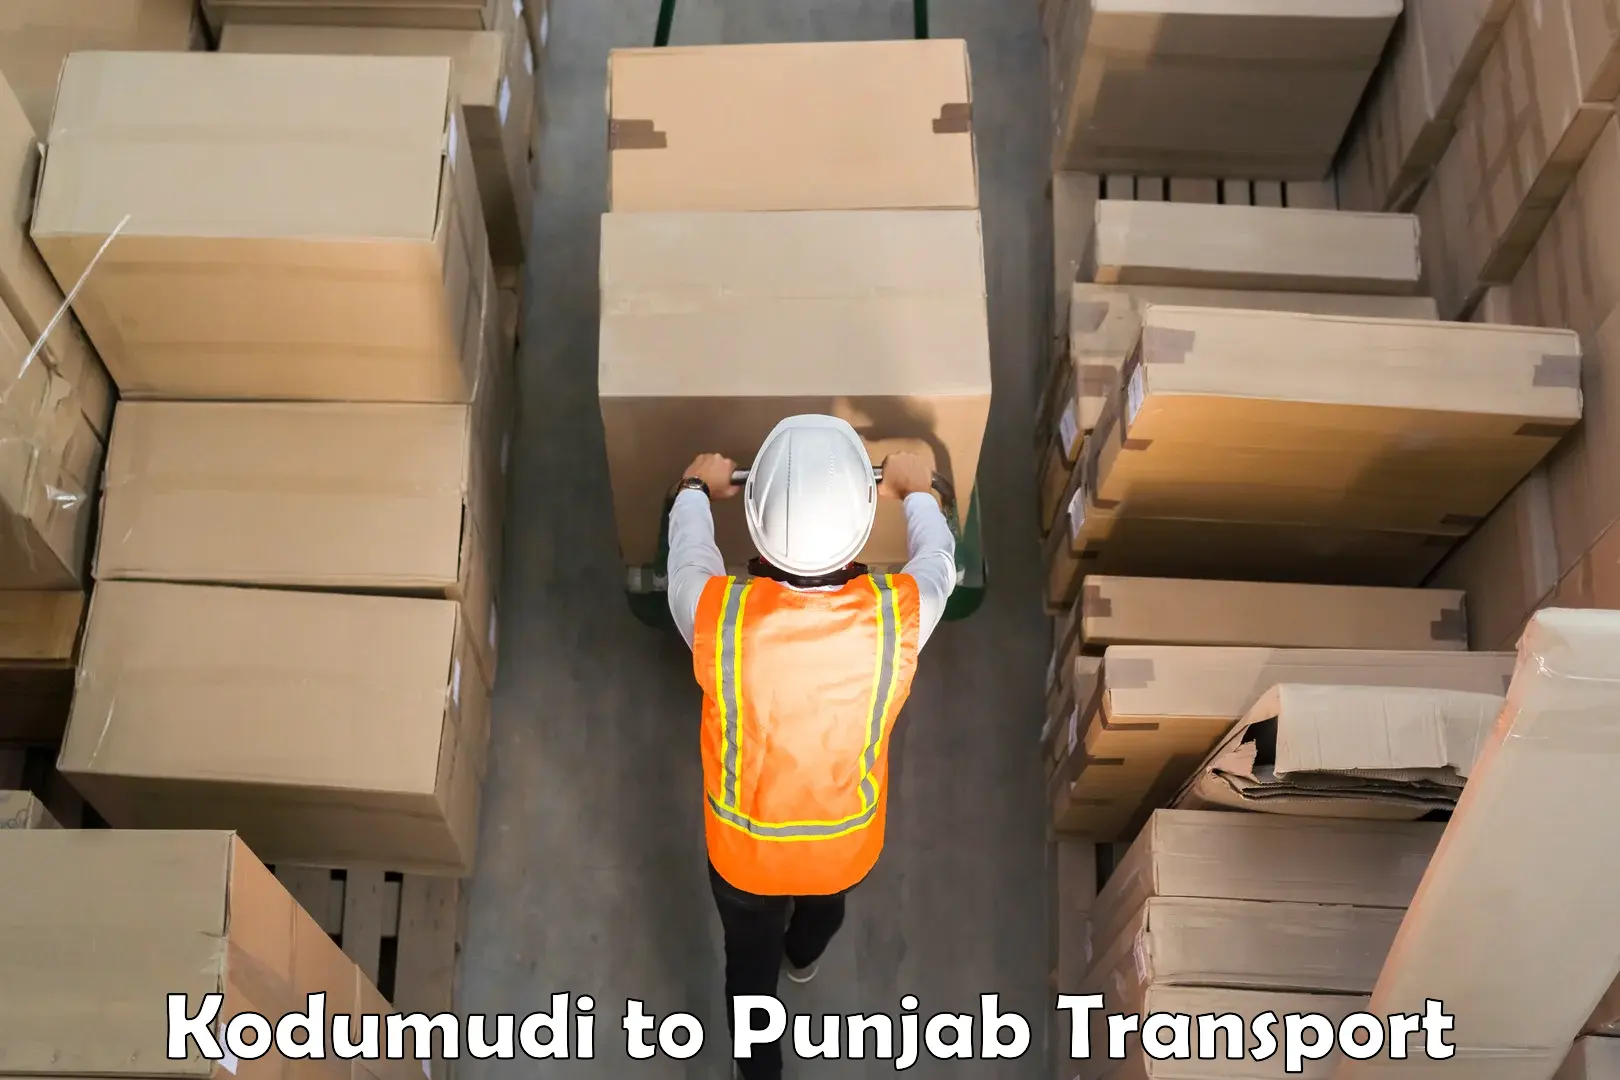 Land transport services Kodumudi to Punjab